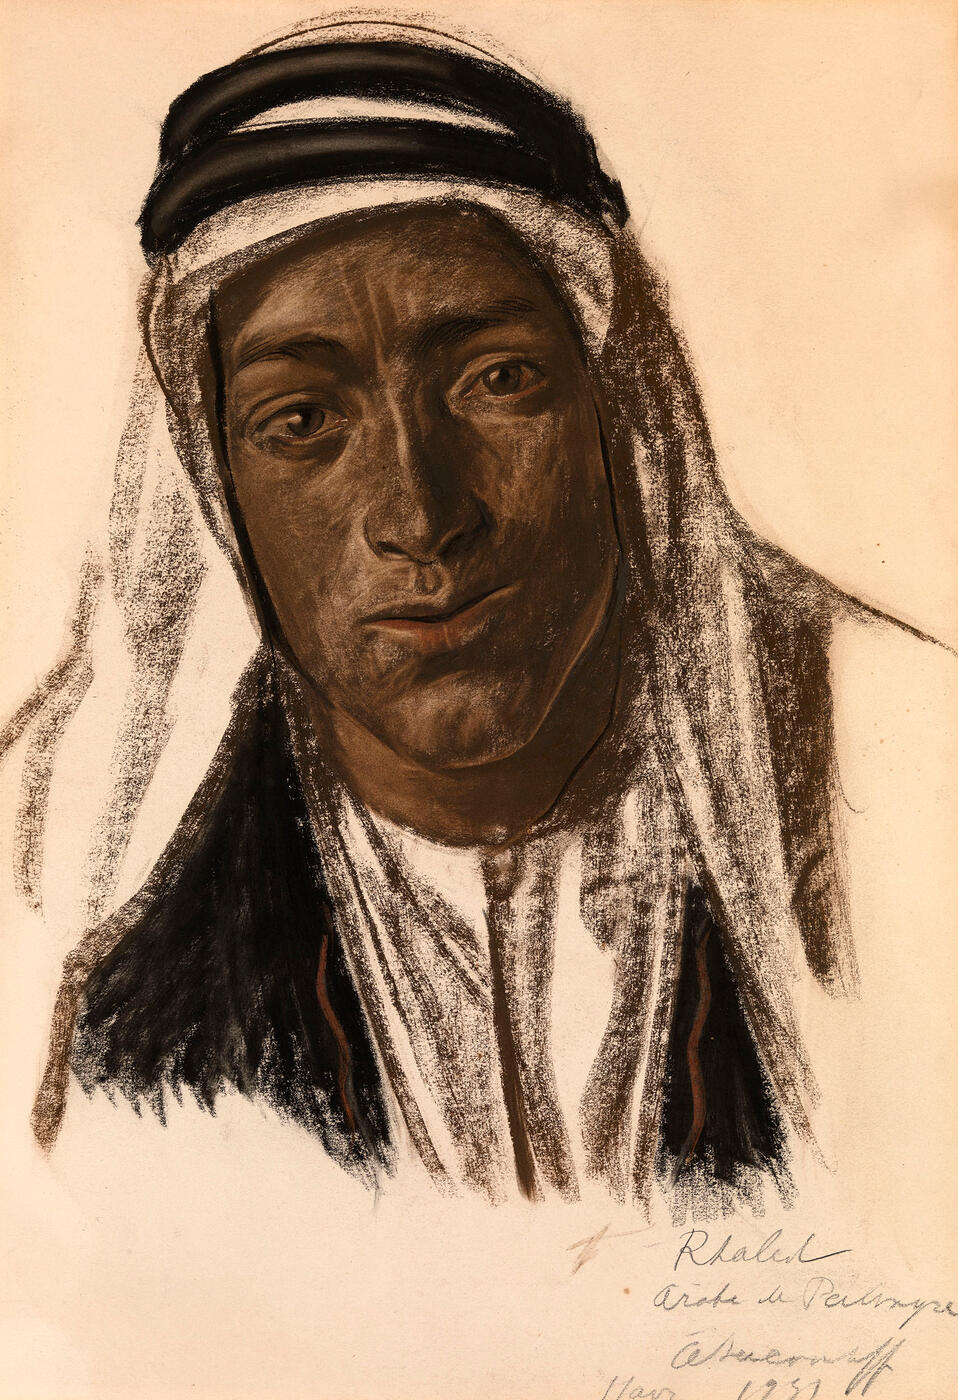 Rhaled, a Palmyran Arab